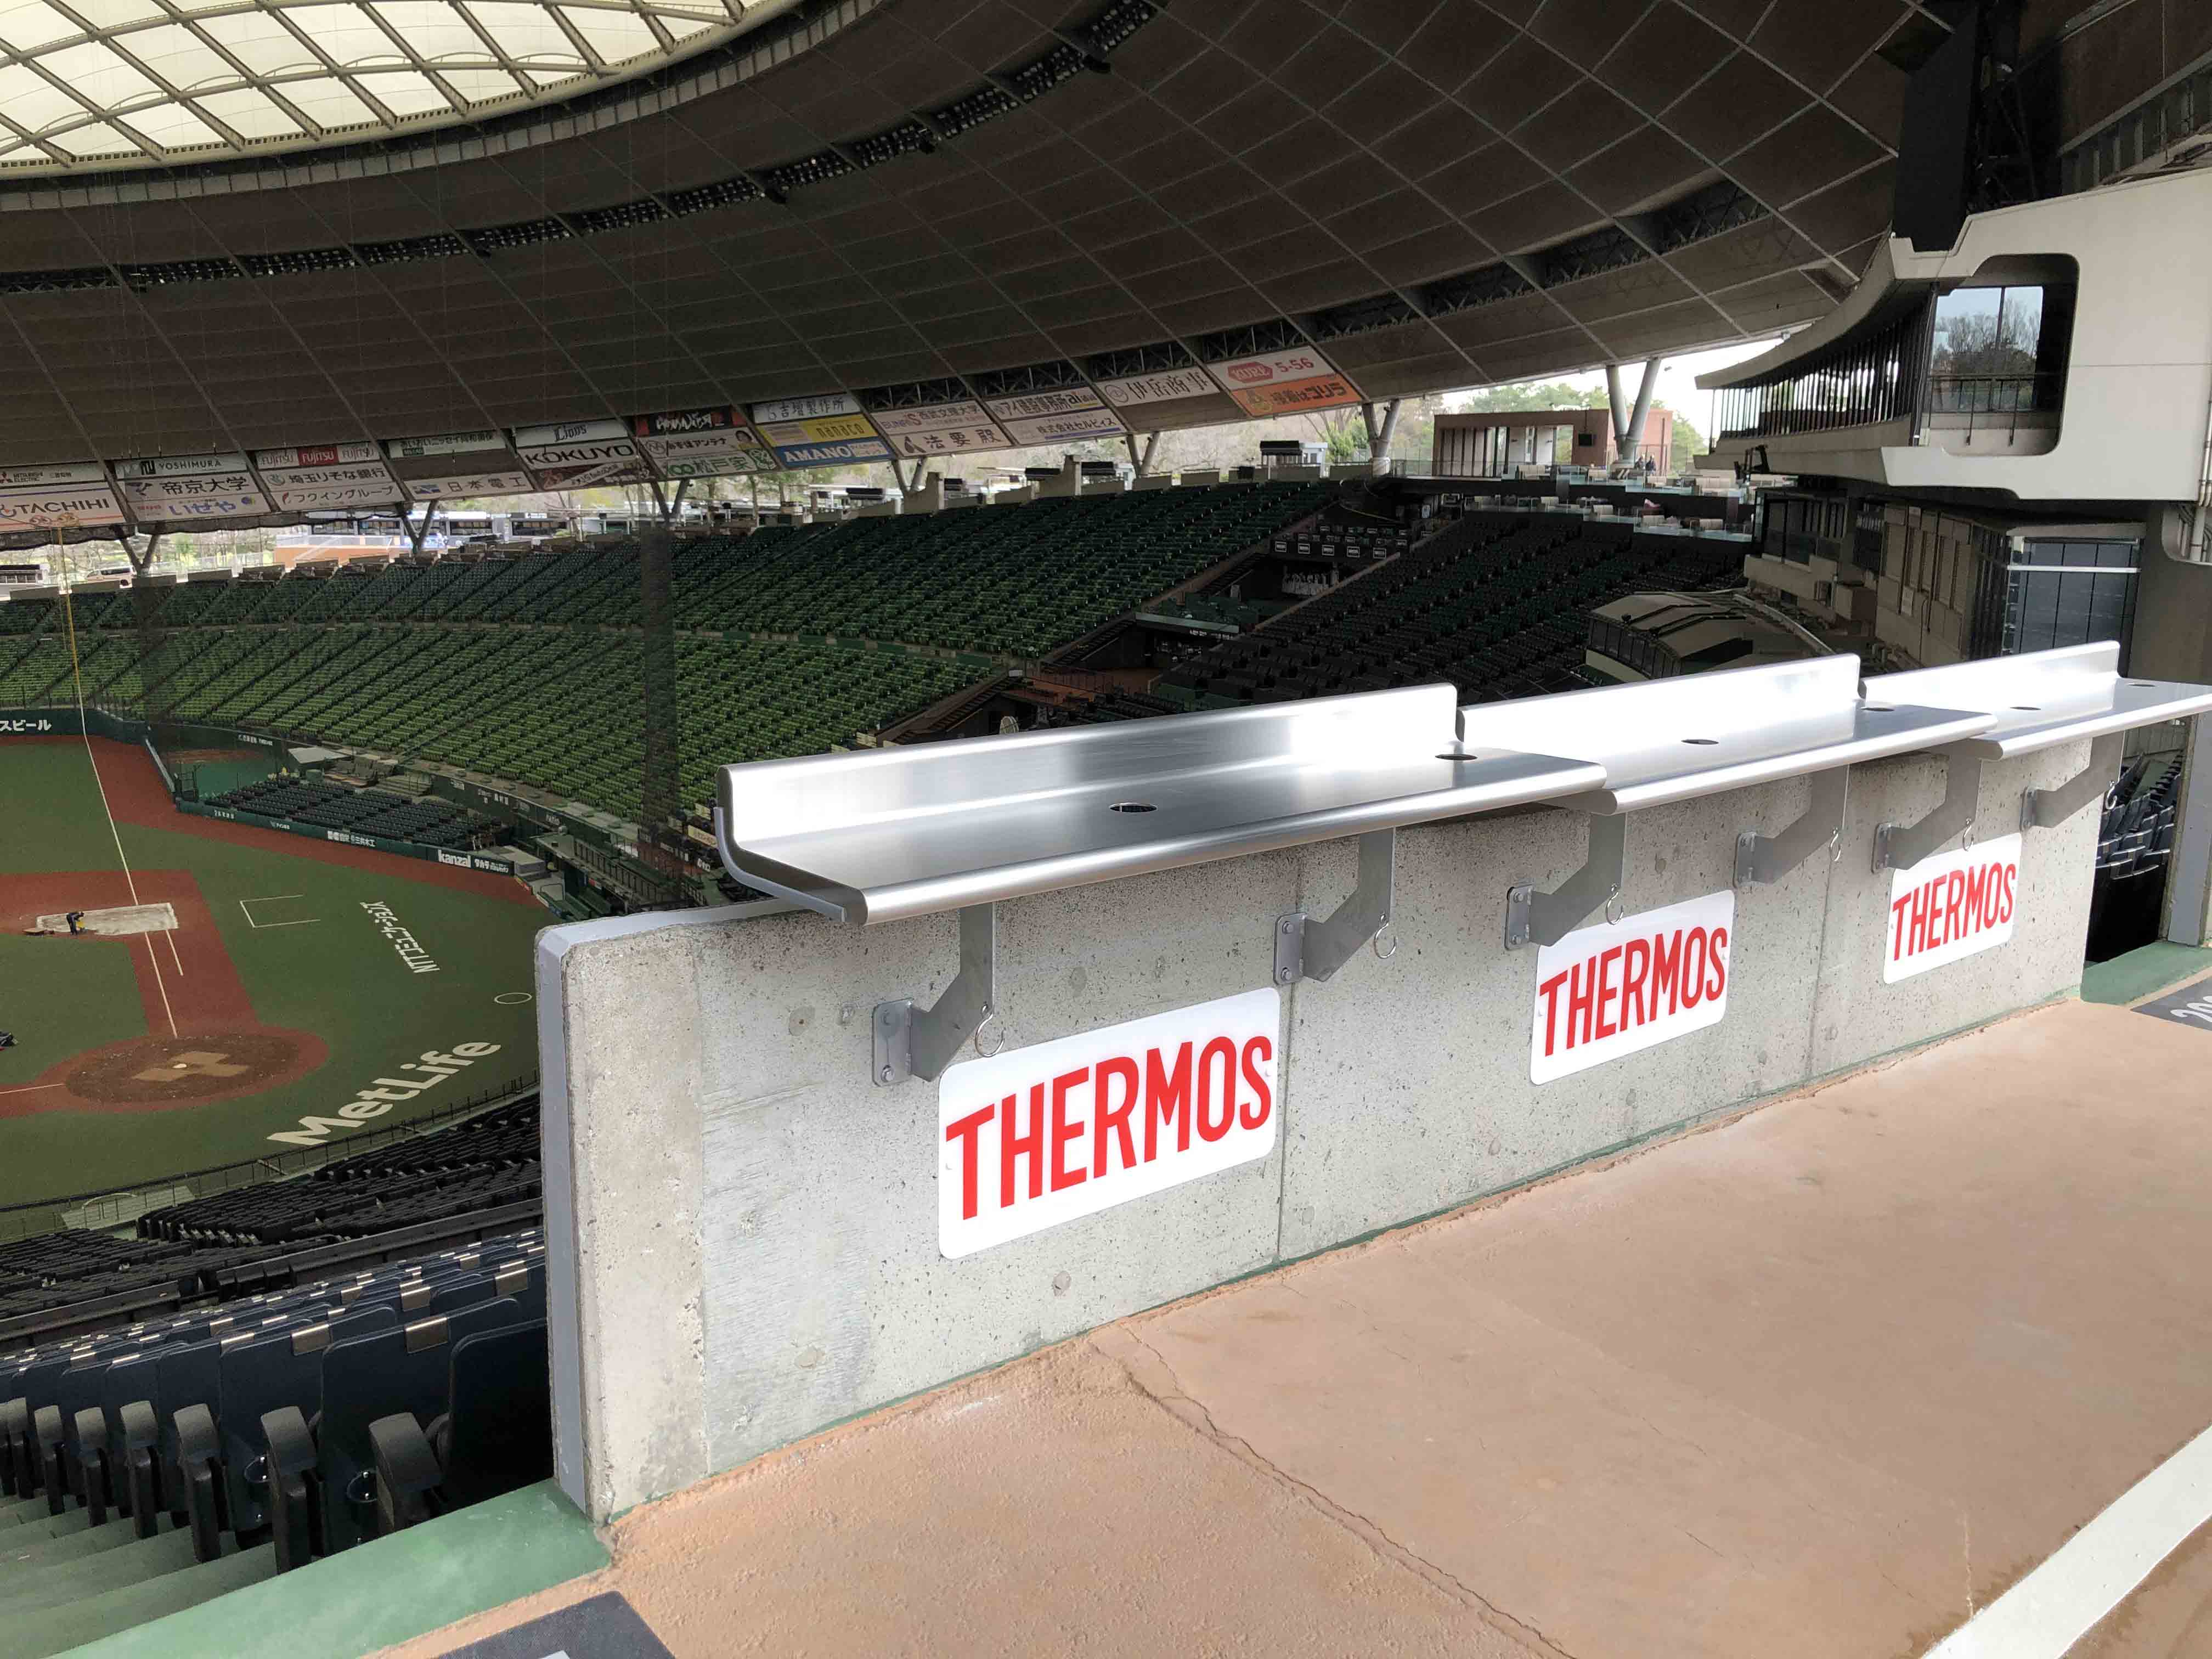 こんな席があったらいいな を実現 理想の立ち見を叶える Thermos ステンレスカウンター メットライフドームエリア改修 ベースボールチャンネル Baseball Channel